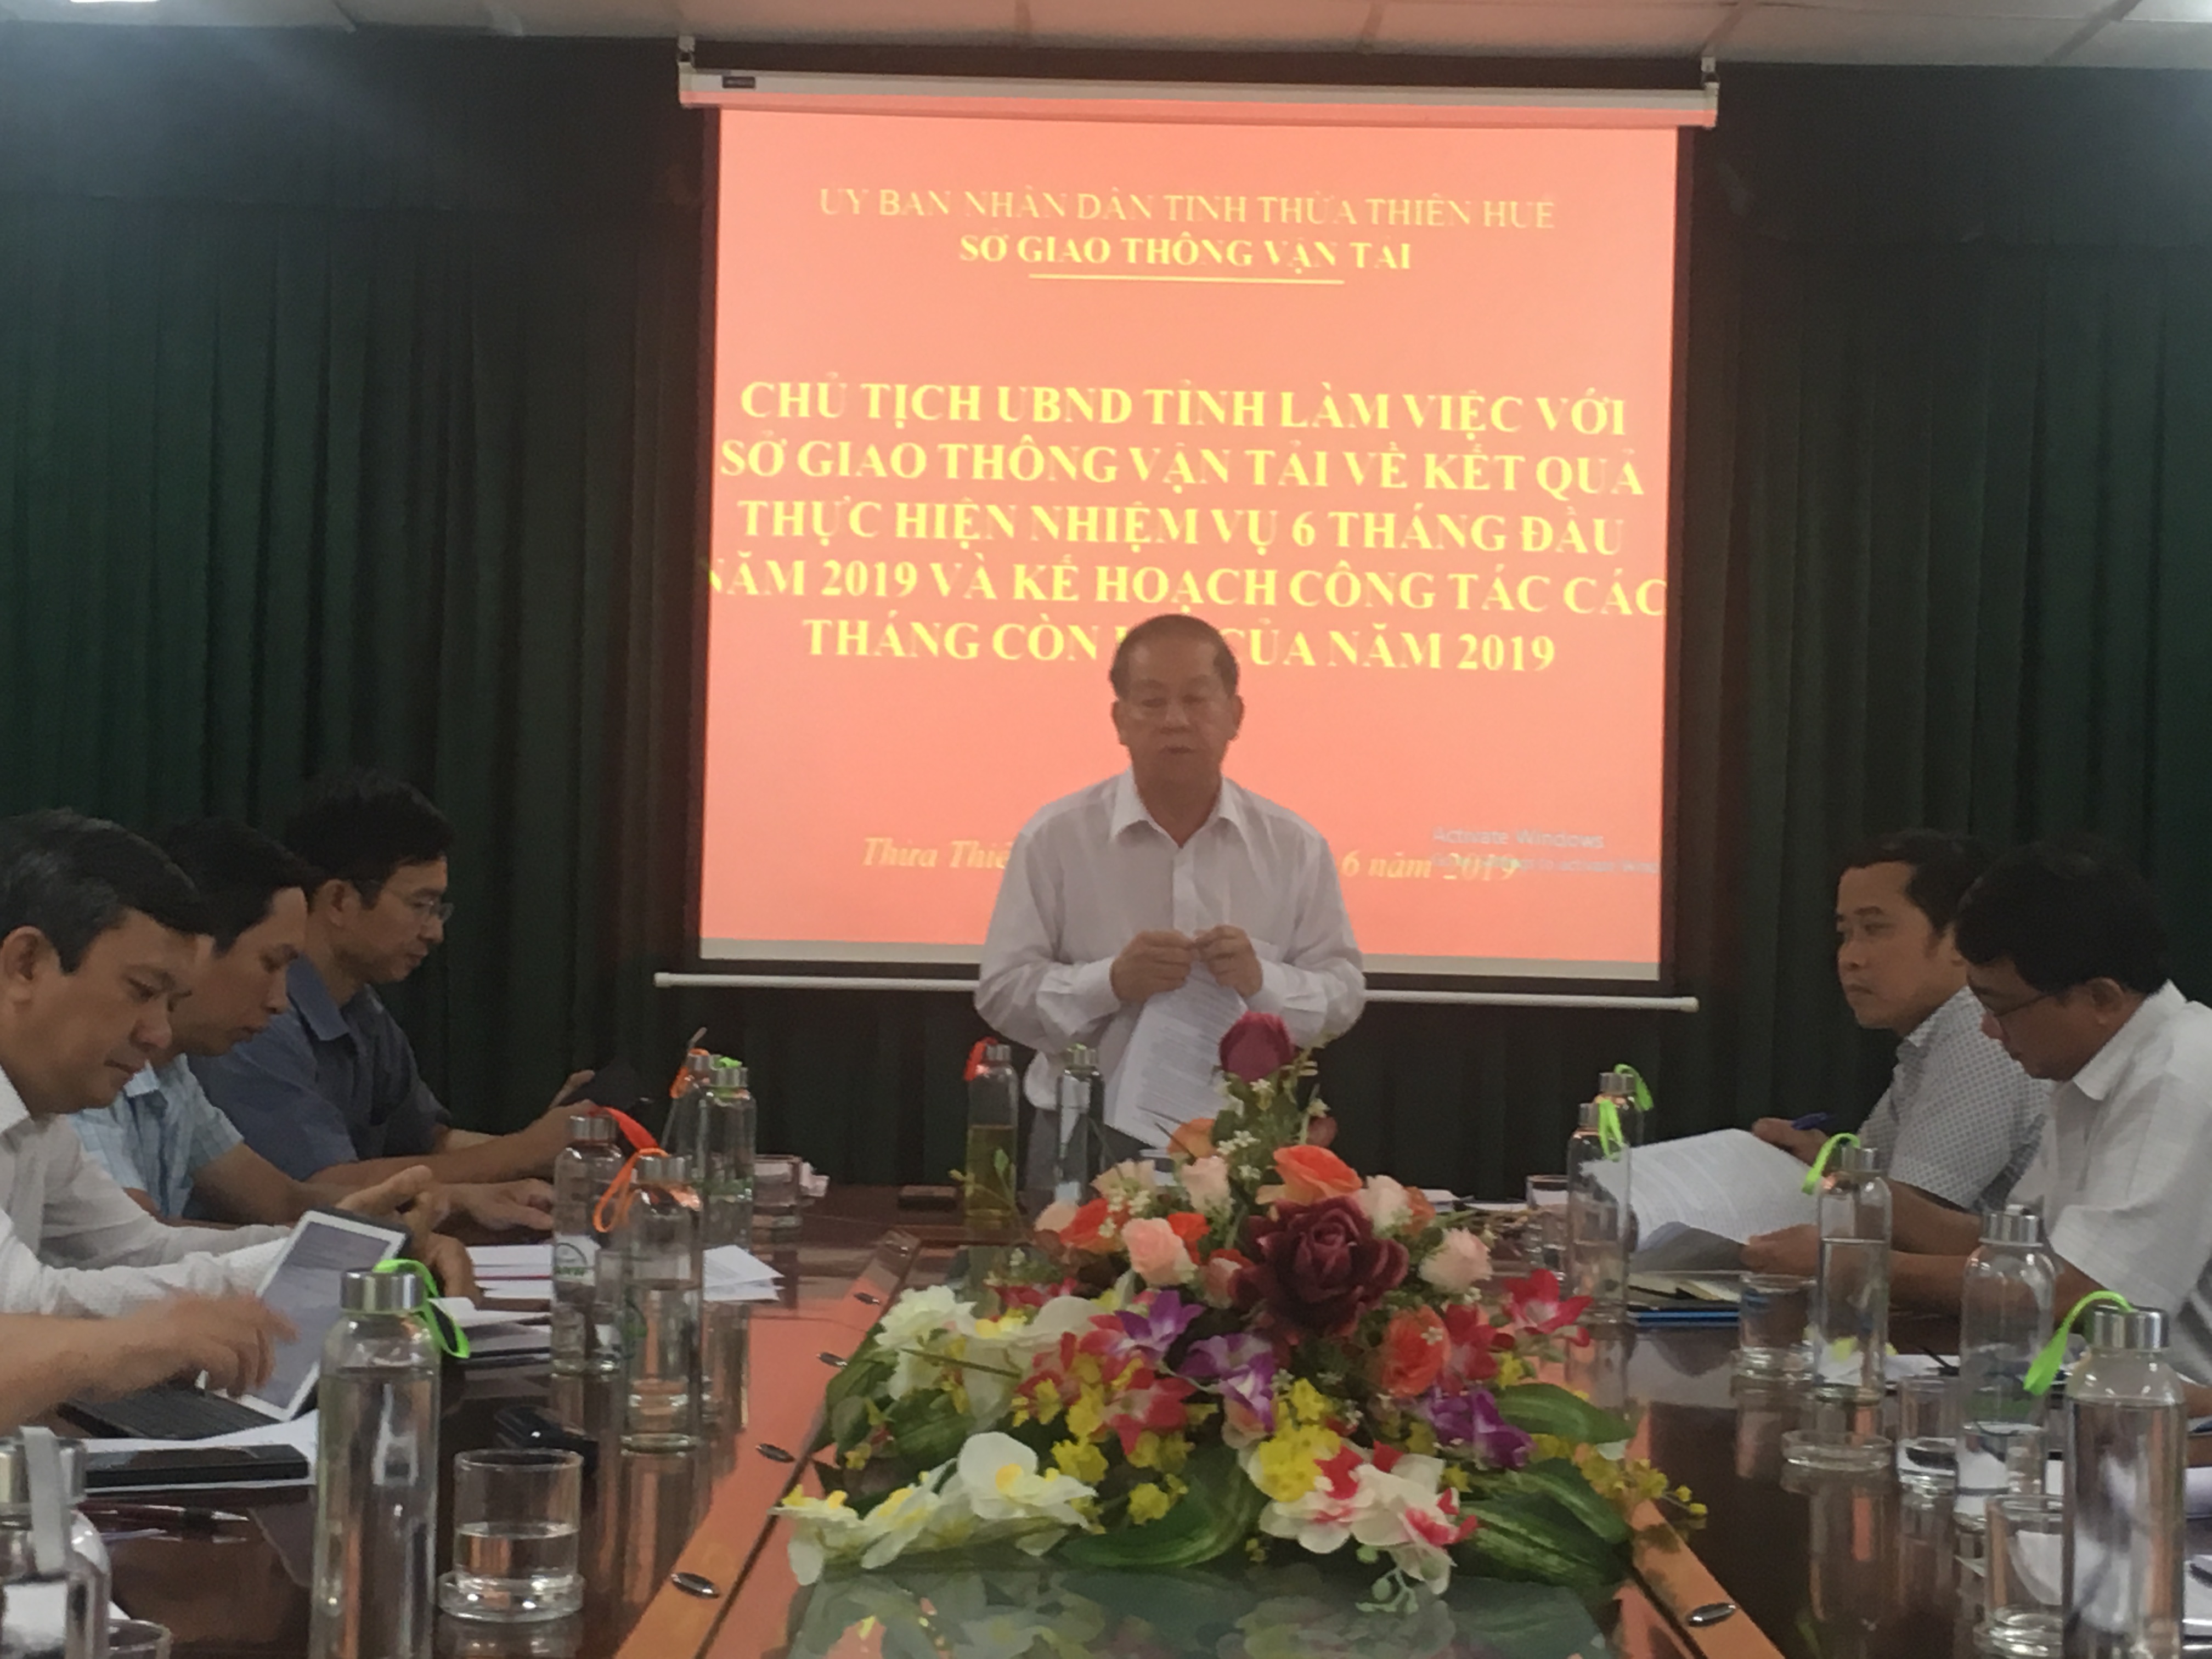 Đồng chí Phan Ngọc Thọ, Phó Bí thư Tỉnh ủy, Chủ tịch UBND tỉnh phát biểu kết luận buổi làm việc